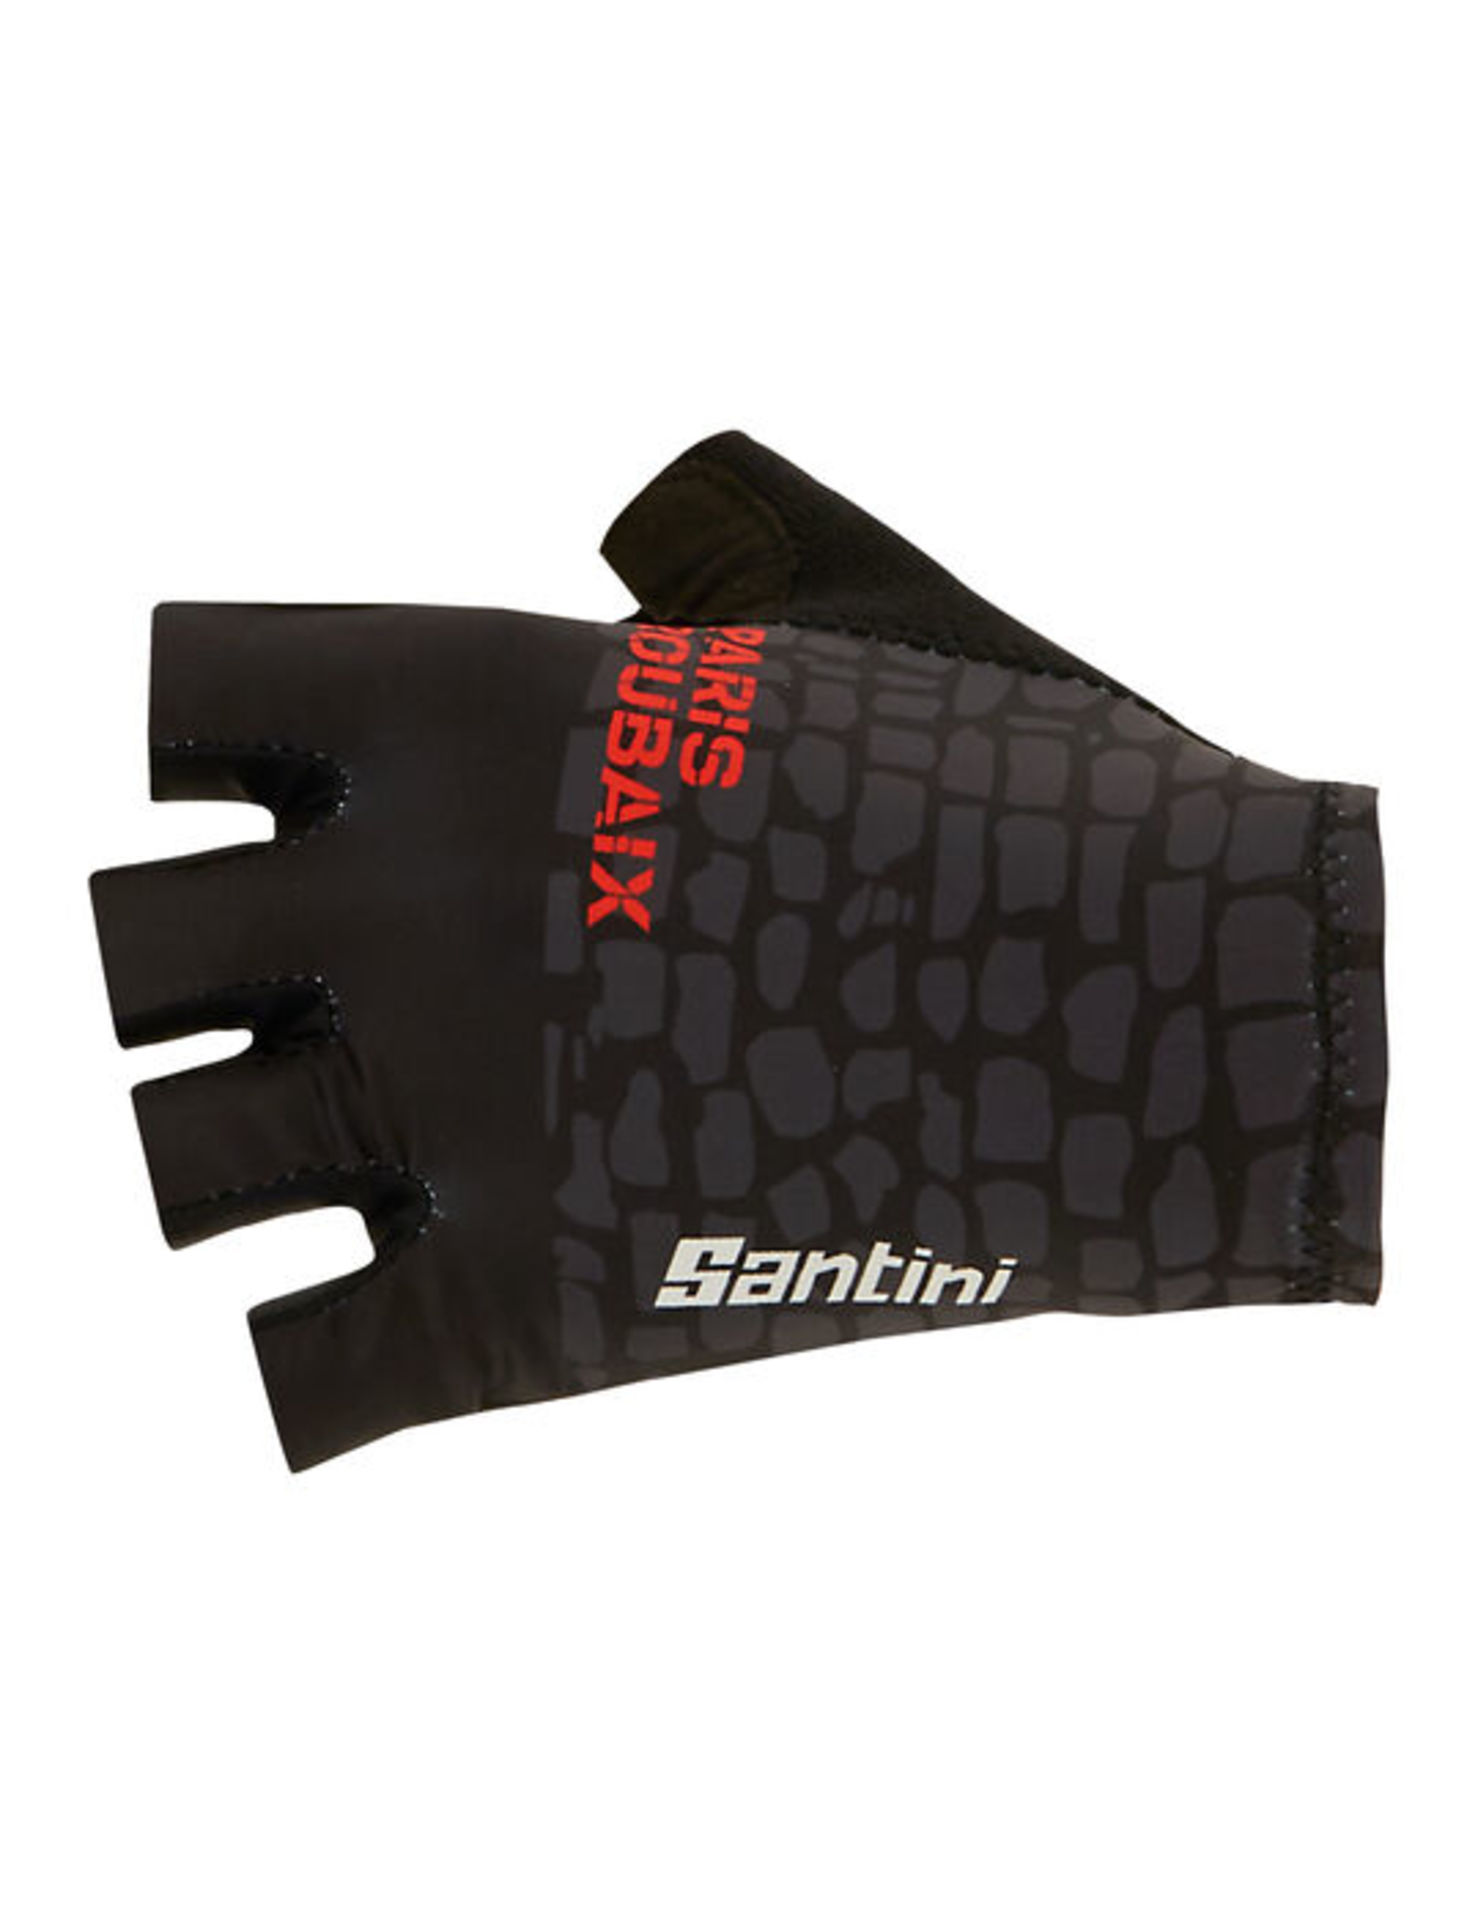 Santini Paris Roubaix Fietshandschoenen Zwart/Rood